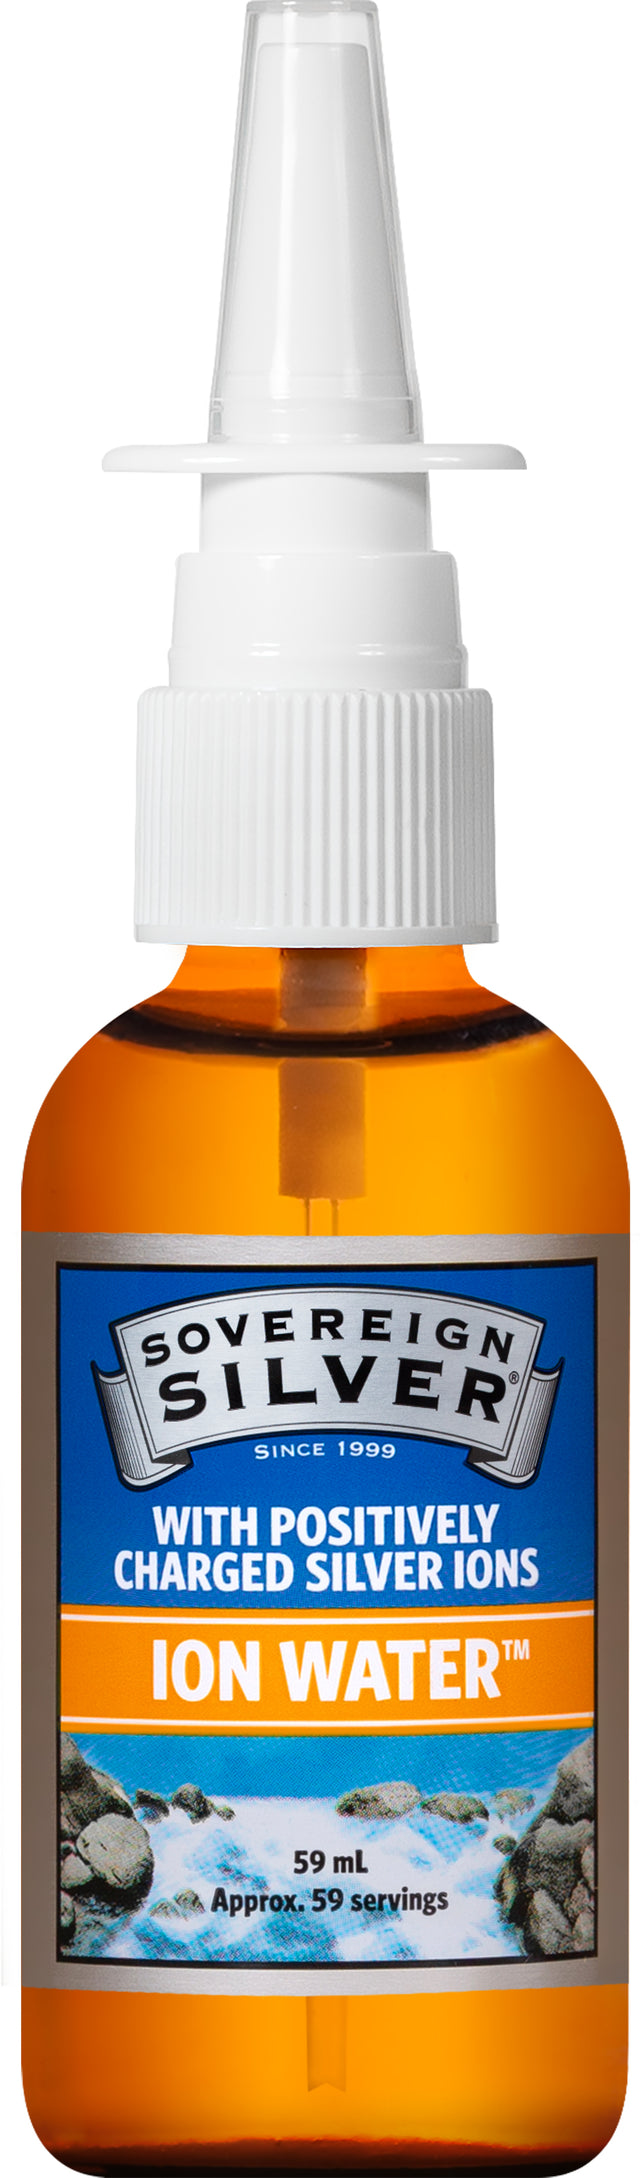 Sovereign Silver  Vertical Spray, 60ml